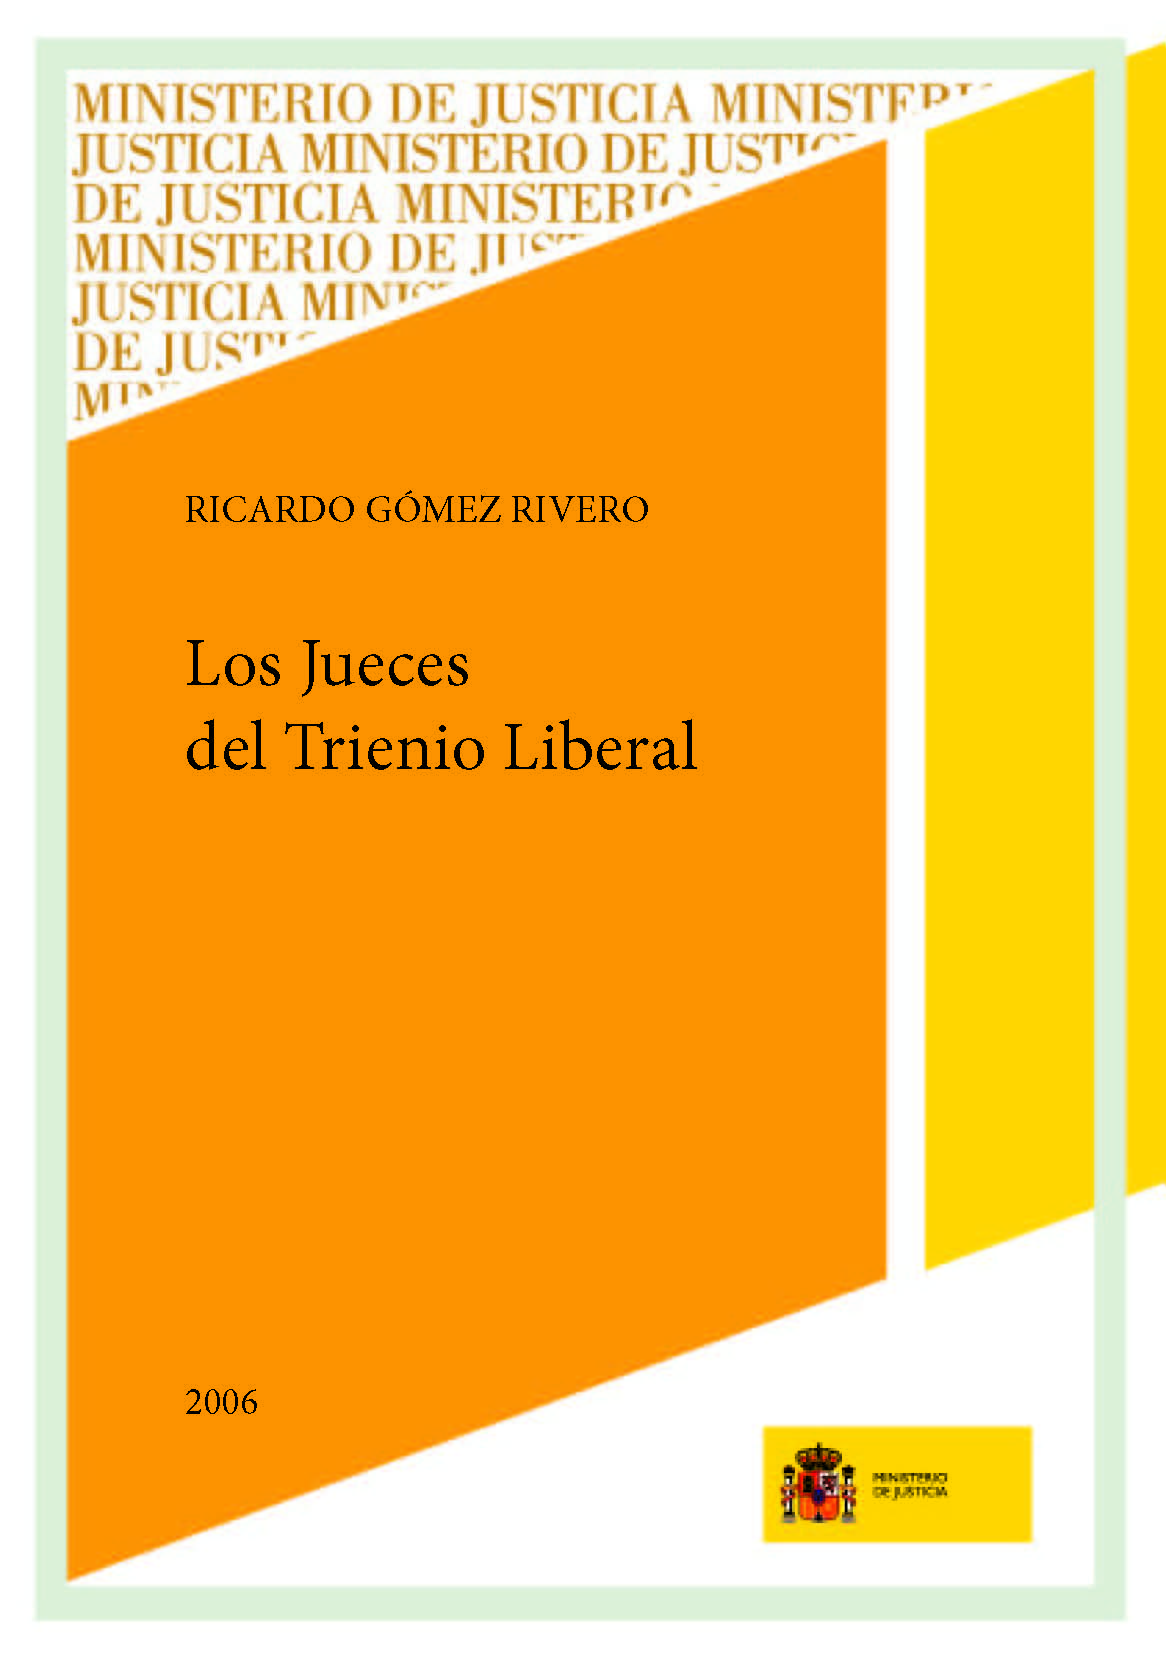 View details of LOS JUECES DEL TRIENIO LIBERAL